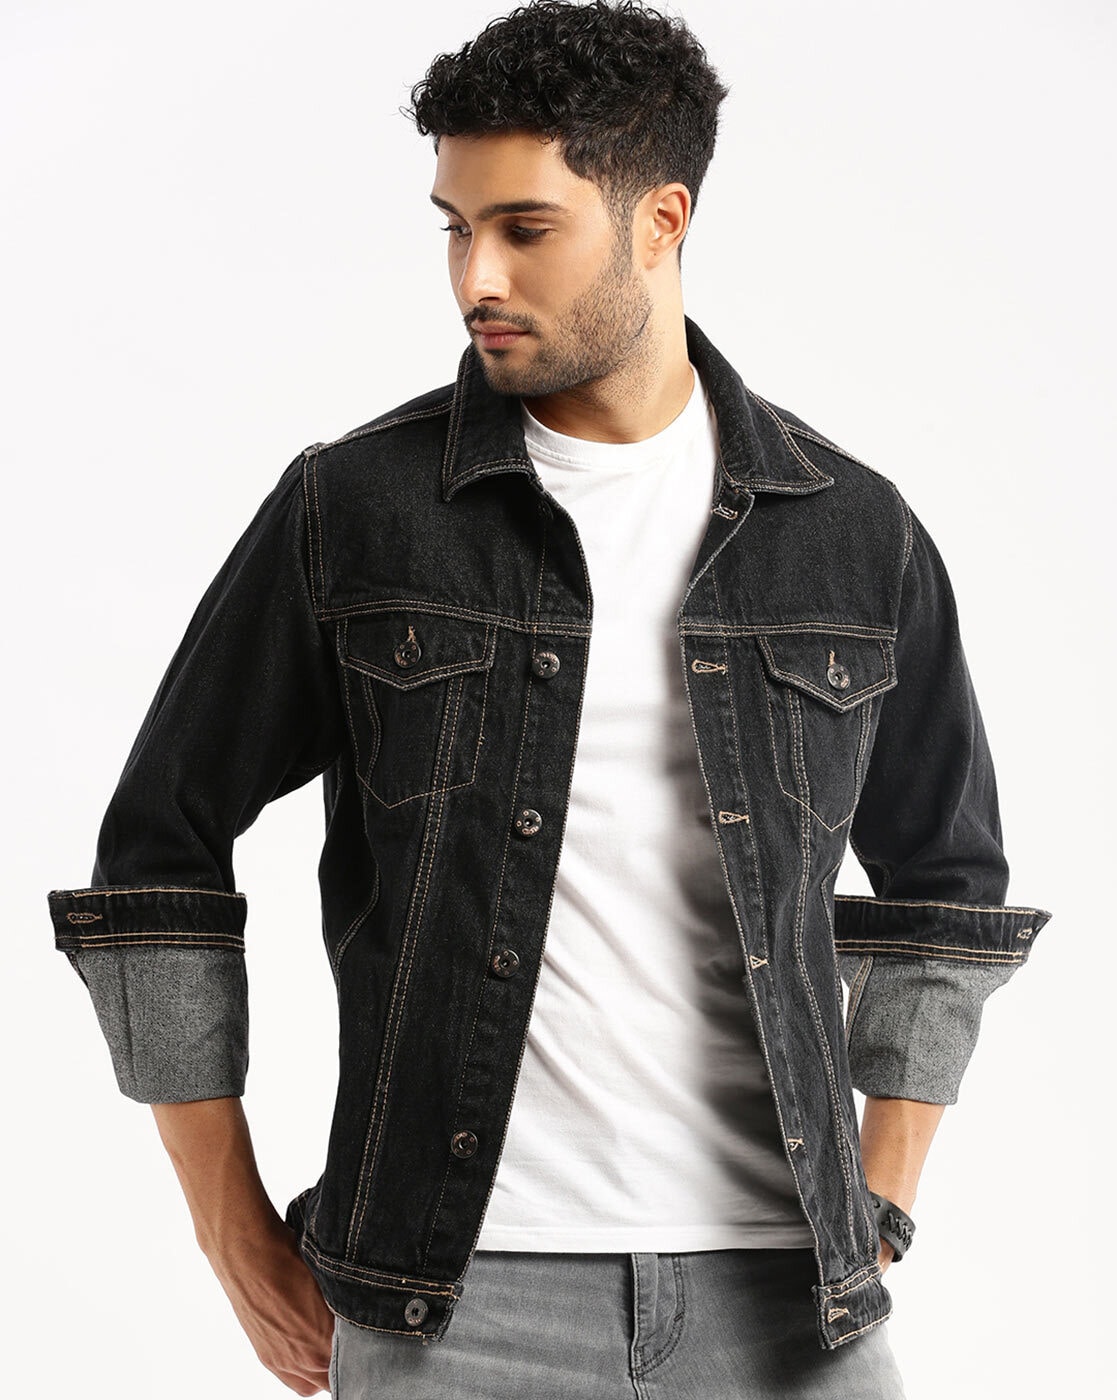 Number 8 Trucker Denim Jacket for Men - Winter – Jeans4you.shop